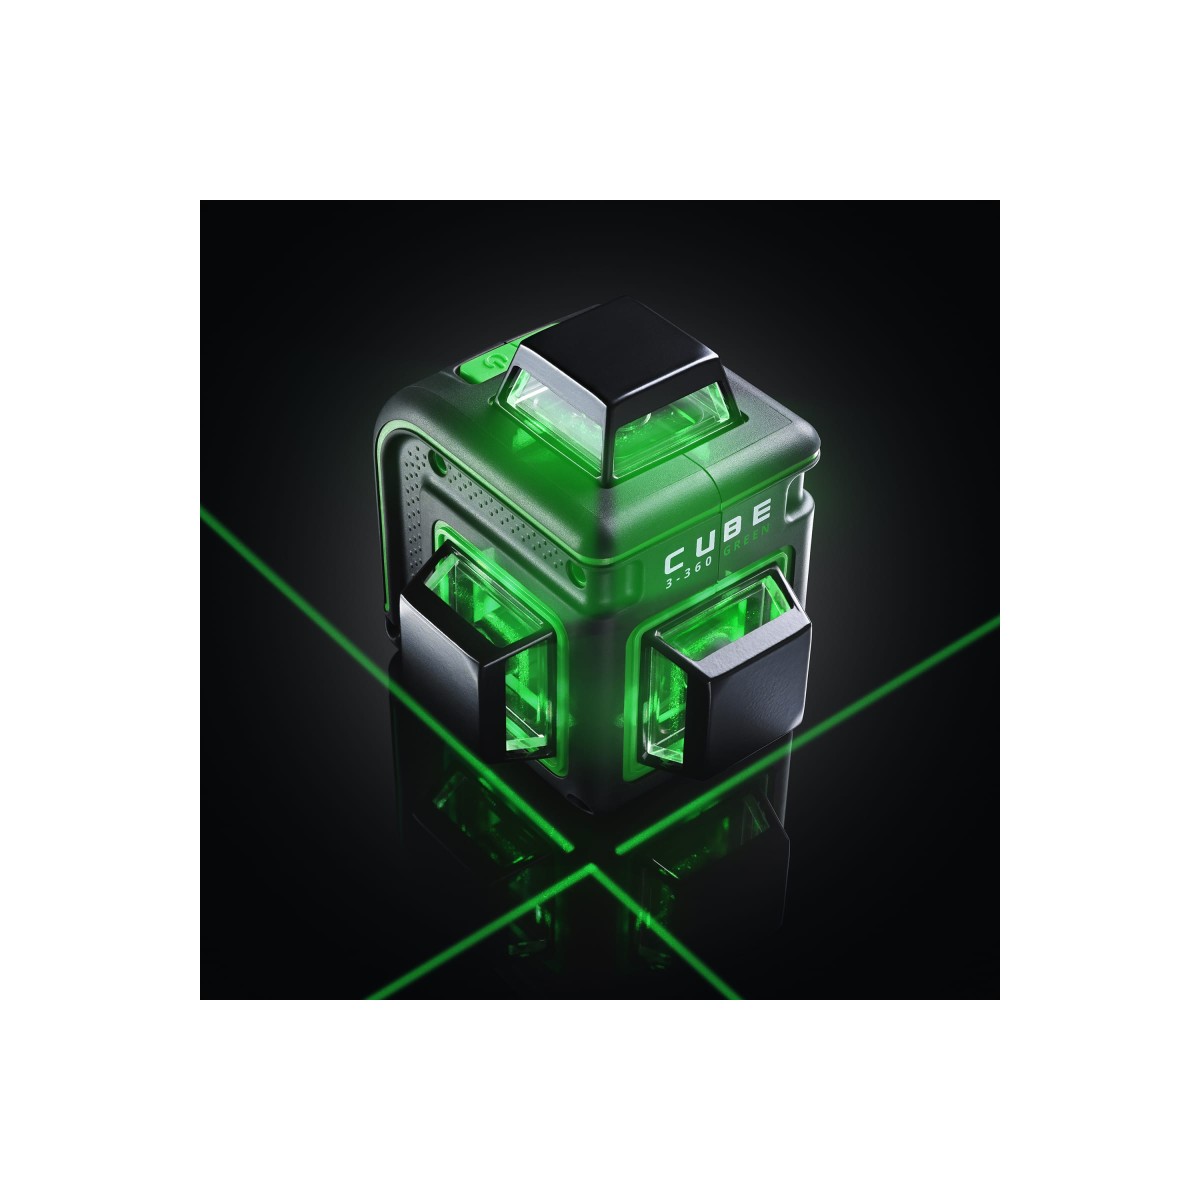 Лазерный уровень cube 360 professional edition. Ada Cube 3-360 Green. Лазерный уровень ada Cube 3-360 Basic Edition. Ada Cube 2-360 Green. Лазерный уровень Cube 3 сломанный.